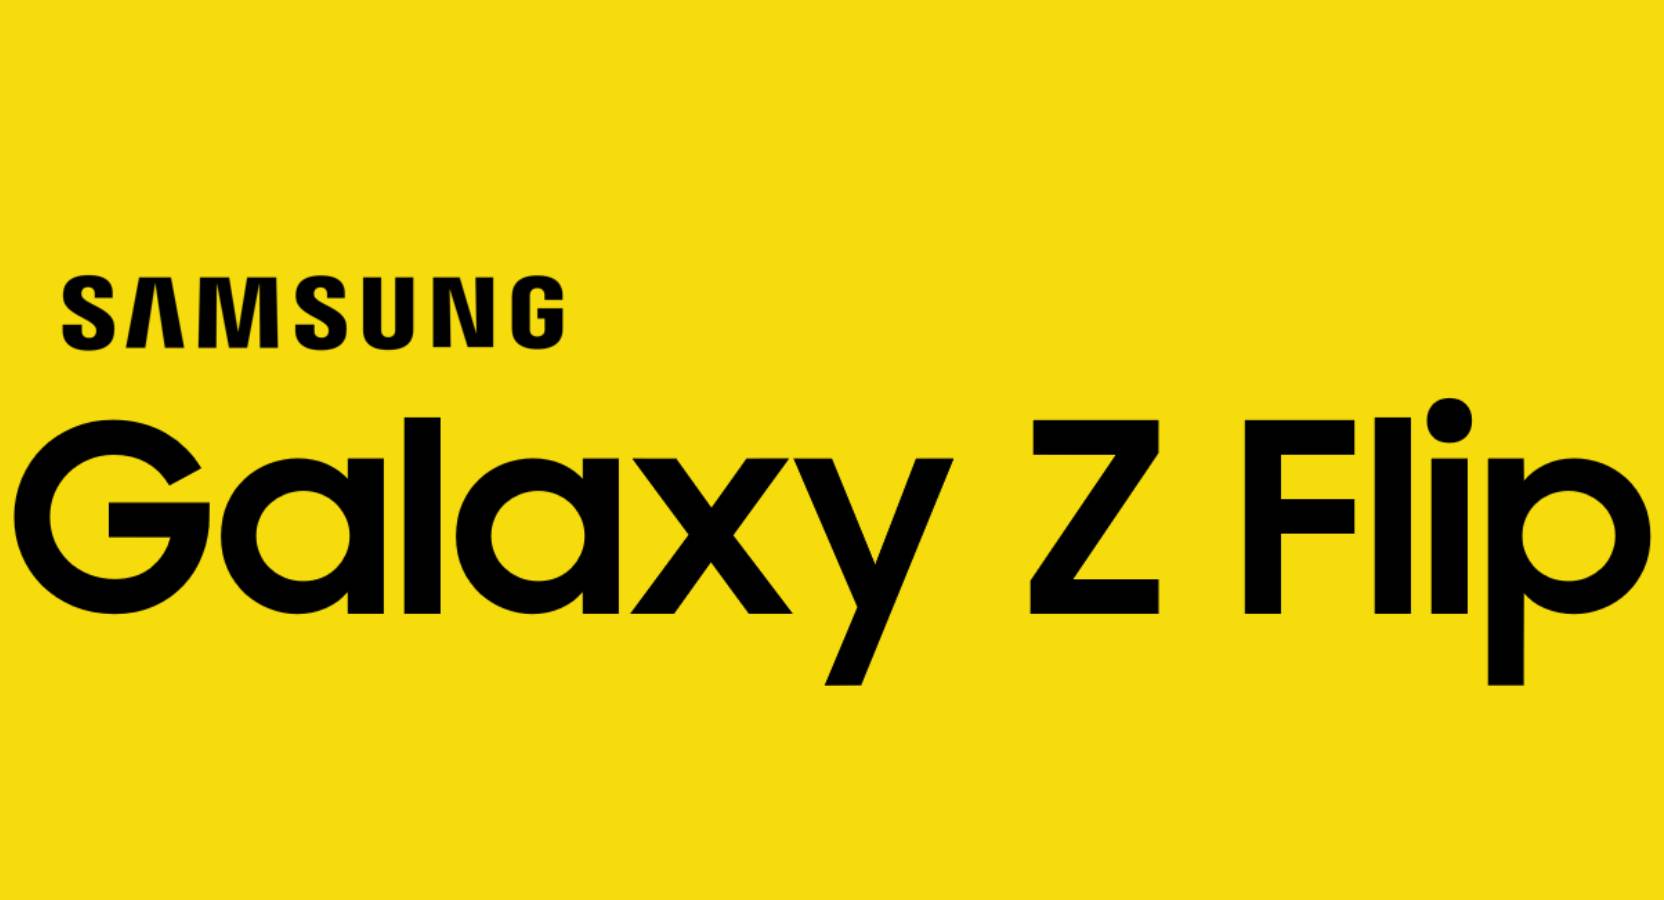 Samsung GALAXY Z Flip